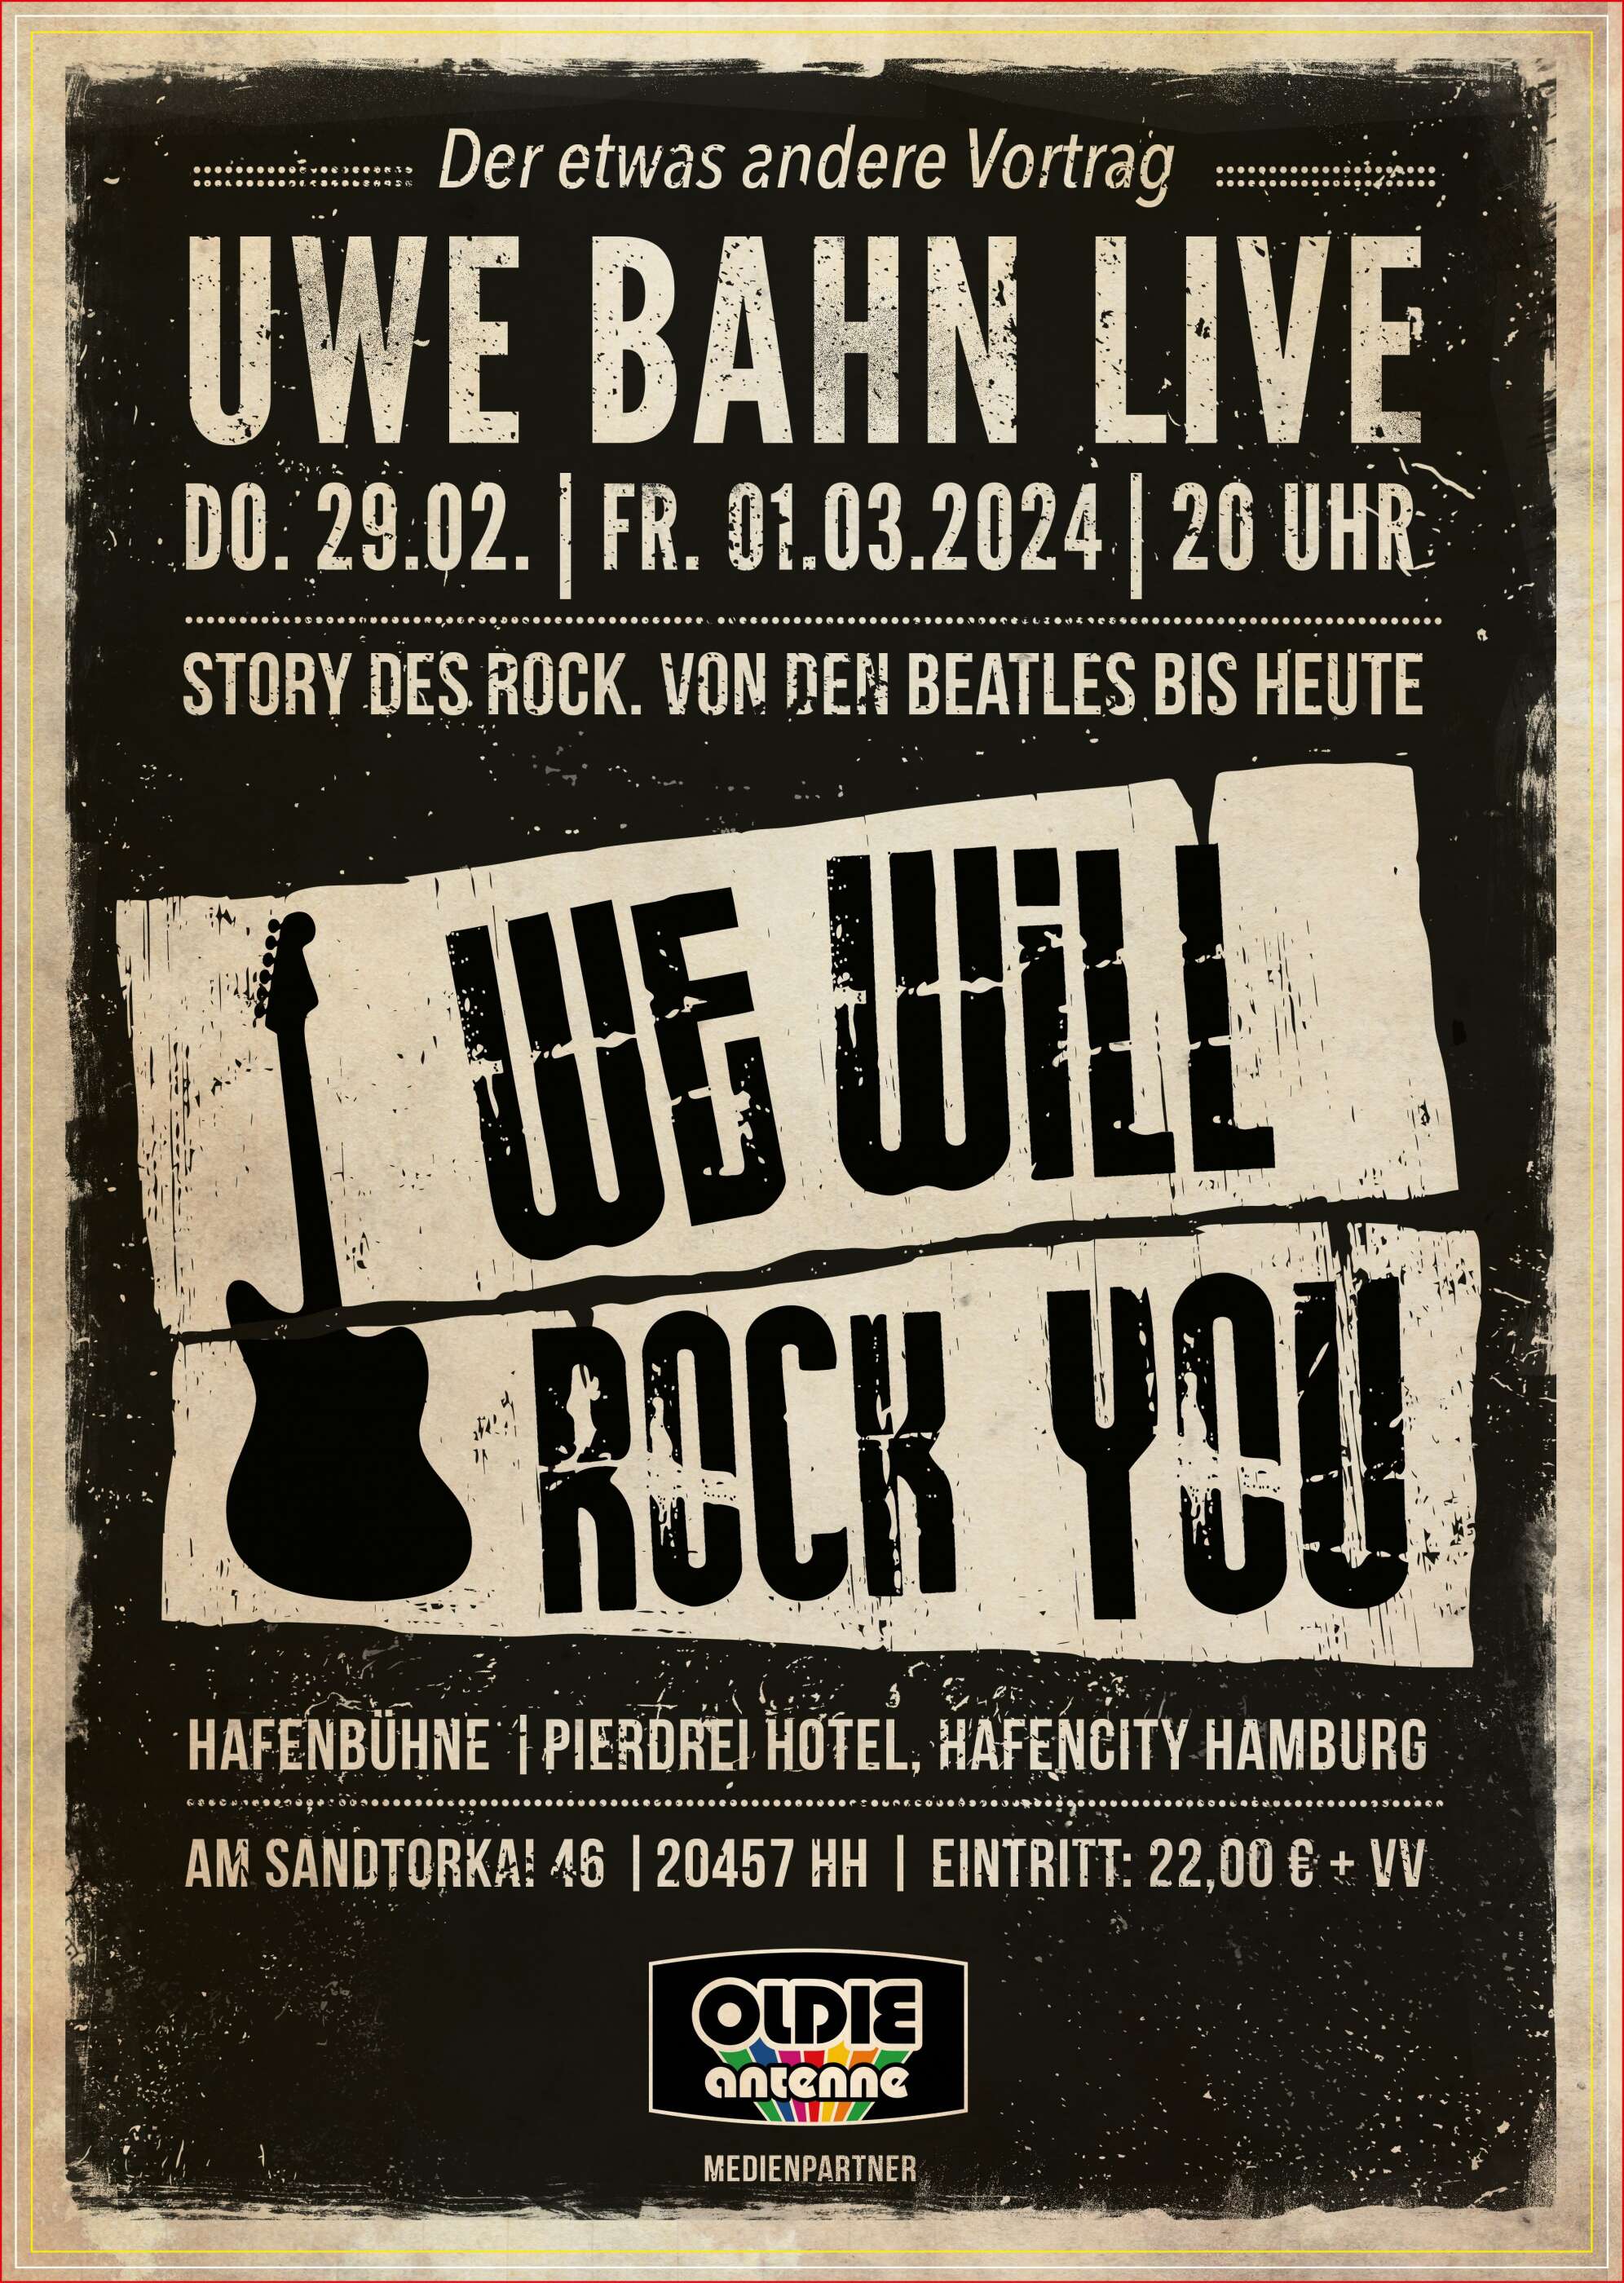 Vortrag "We will rock" in Hamburg